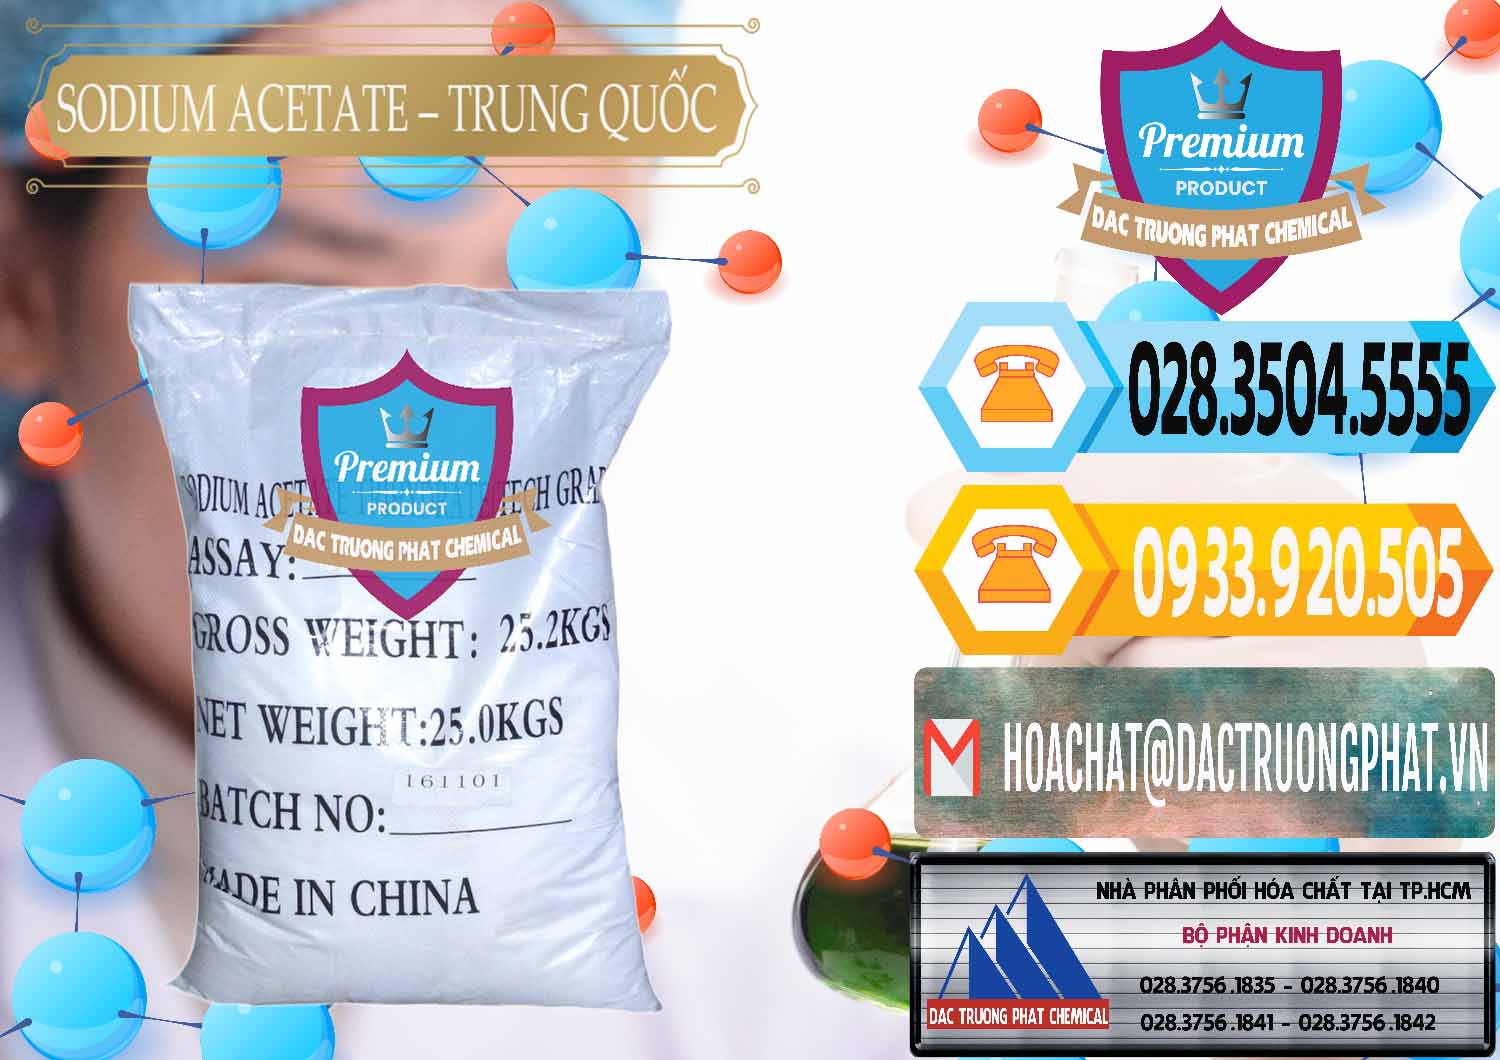 Đơn vị chuyên nhập khẩu & bán Sodium Acetate - Natri Acetate Trung Quốc China - 0134 - Cung cấp ( kinh doanh ) hóa chất tại TP.HCM - hoachattayrua.net